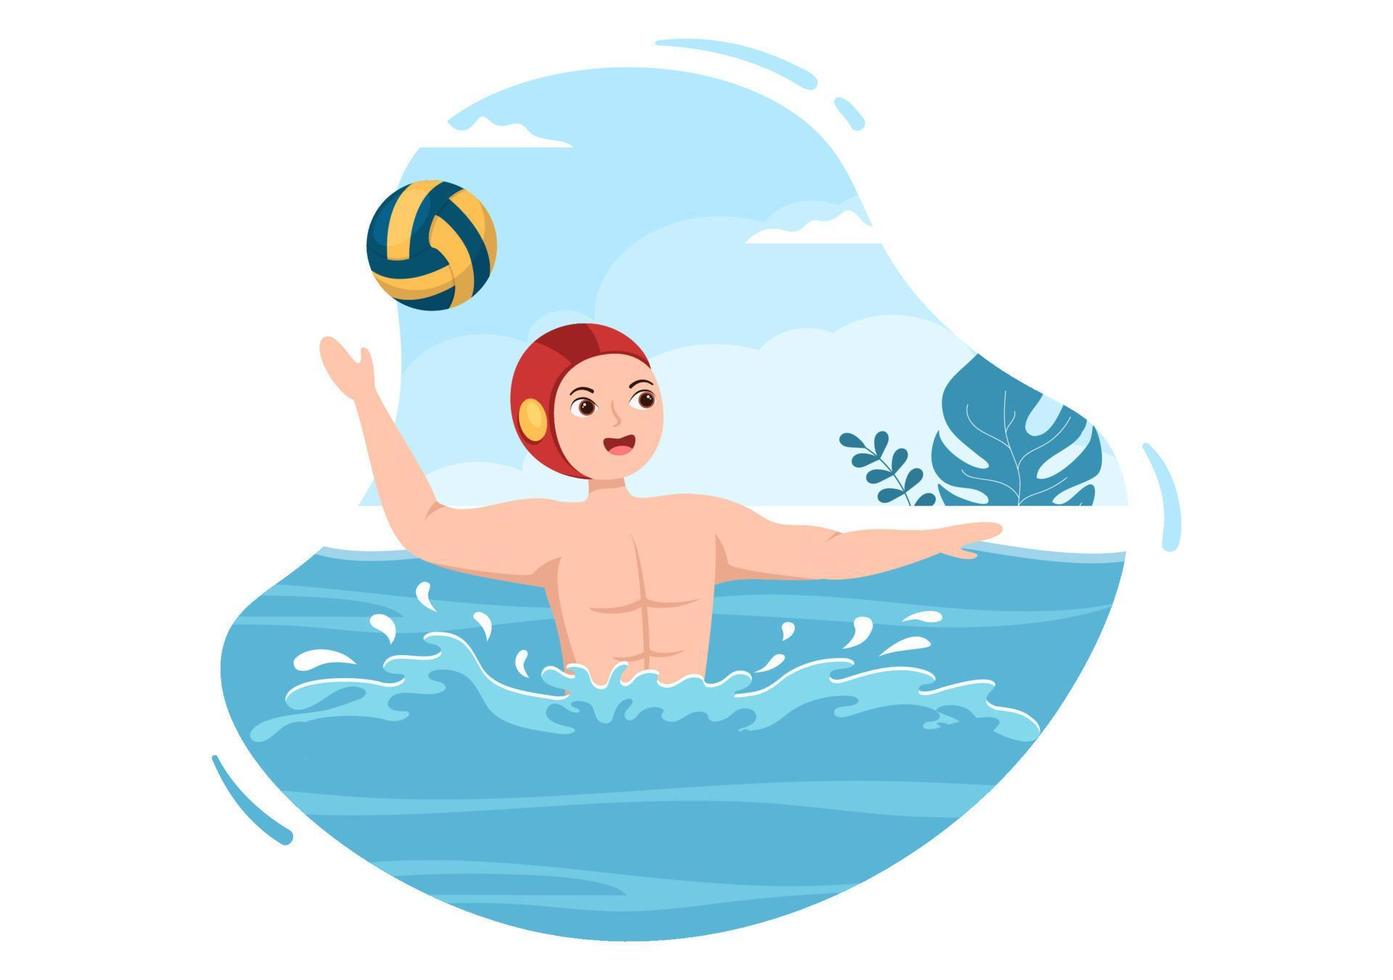 jogador de esporte de pólo aquático jogando para jogar a bola no gol do adversário na piscina em ilustração de modelos desenhados à mão de desenho plano vetor